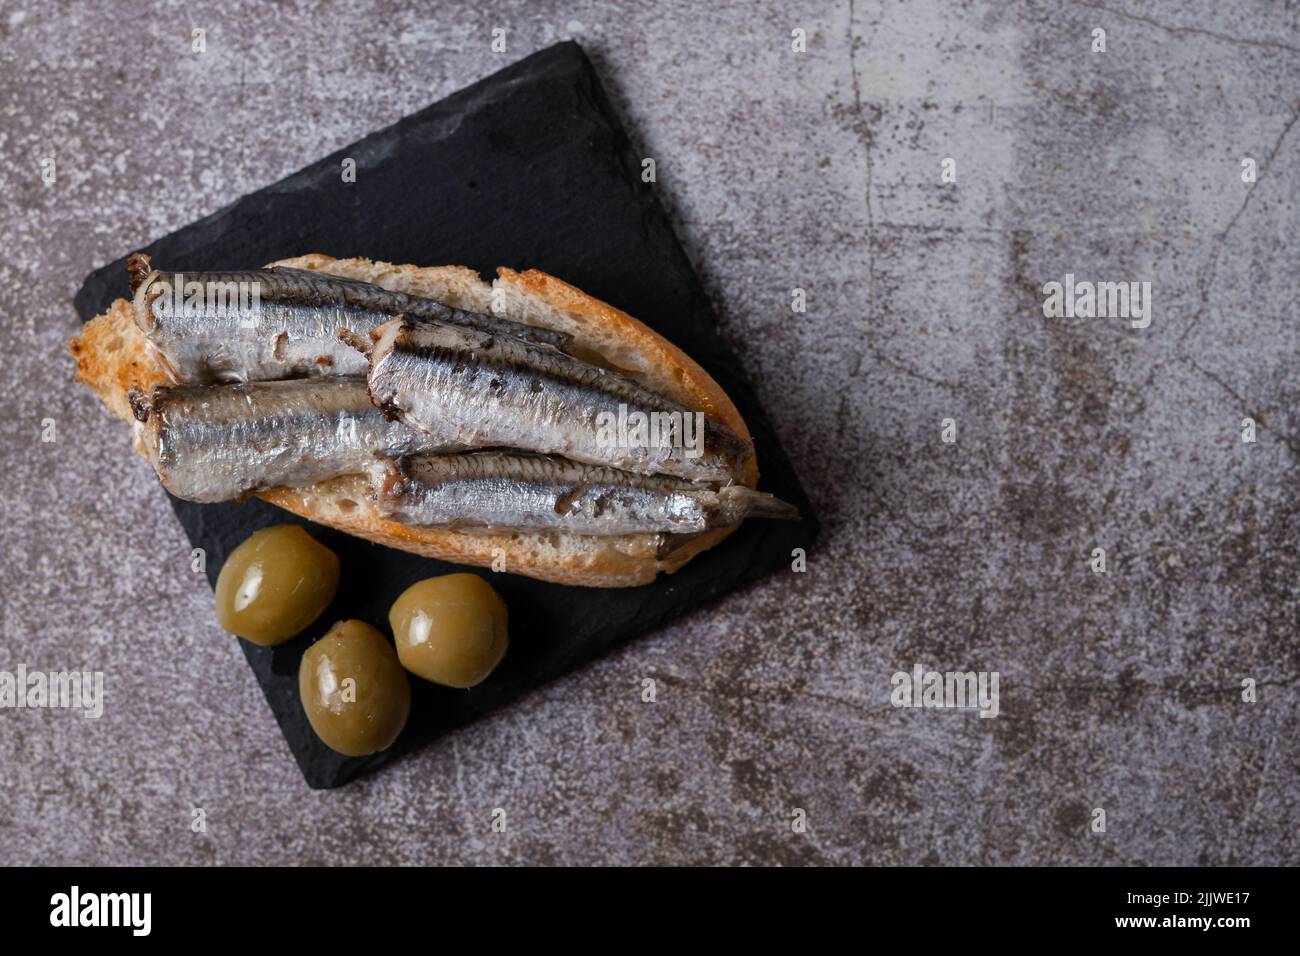 Tapa de sardines sur une tranche de pain avec tomate et olives sur ardoise noire typique espagnol Banque D'Images